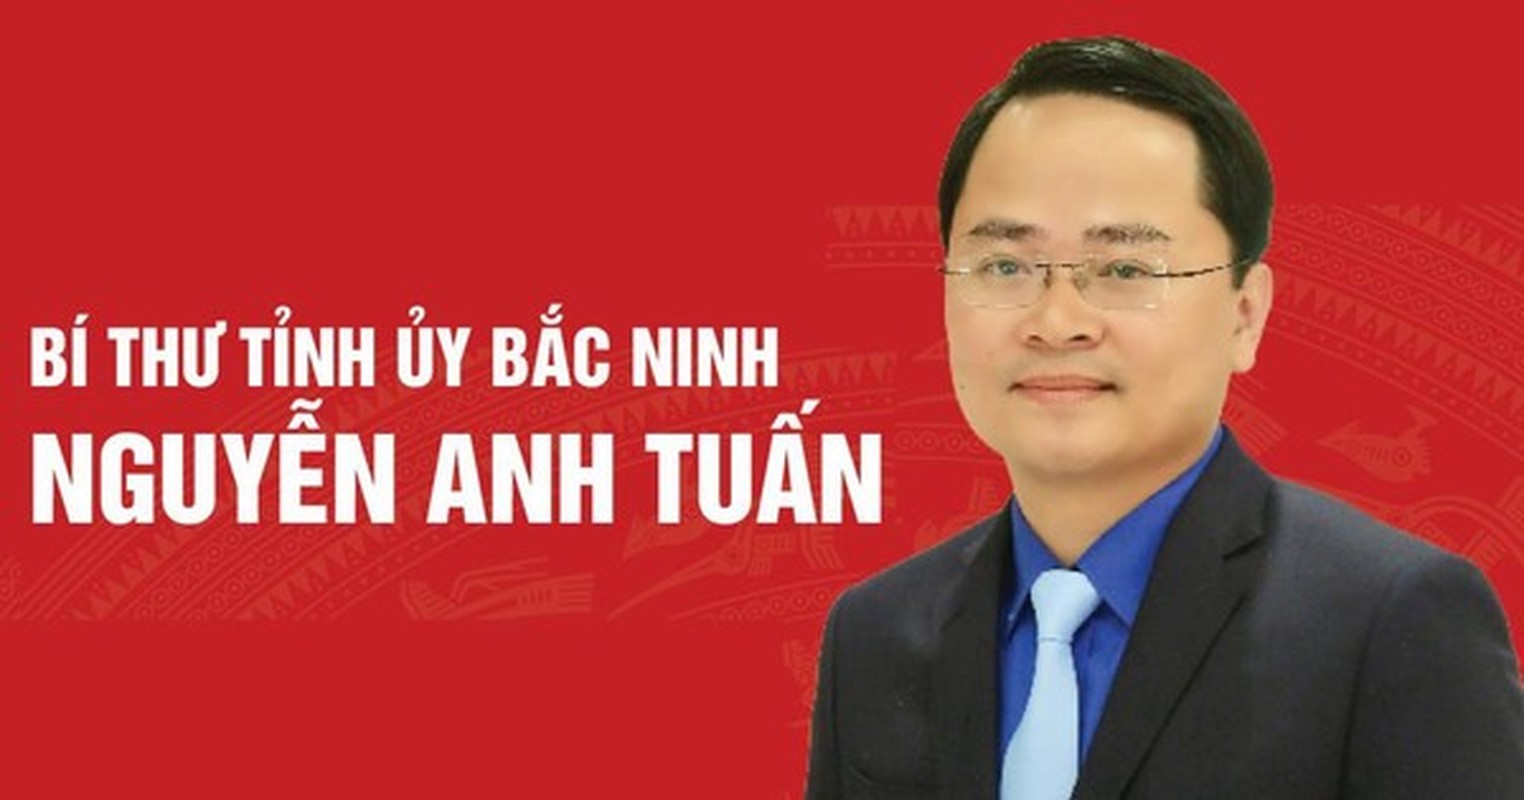 Chan dung ong Nguyen Anh Tuan, tan Bi thu tinh Bac Ninh-Hinh-3